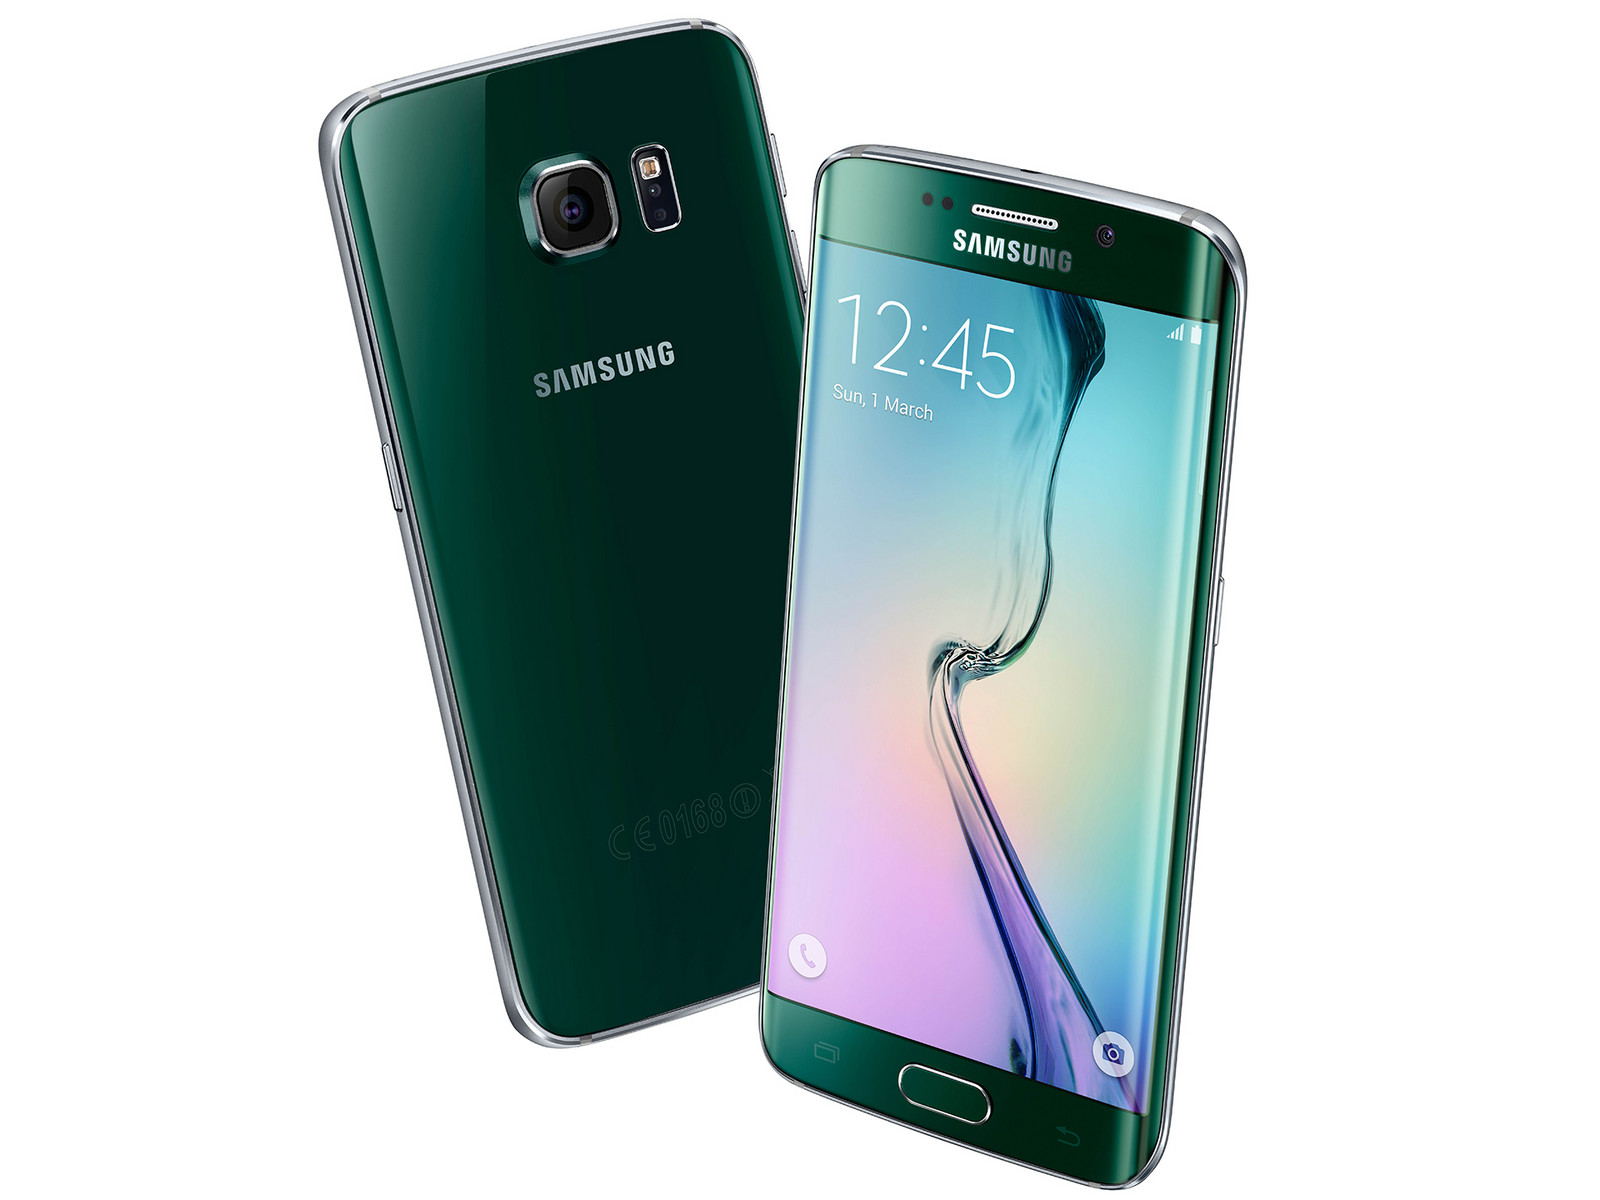 Samsung Galaxy S6 Edge - Notebookcheck.net External Reviews